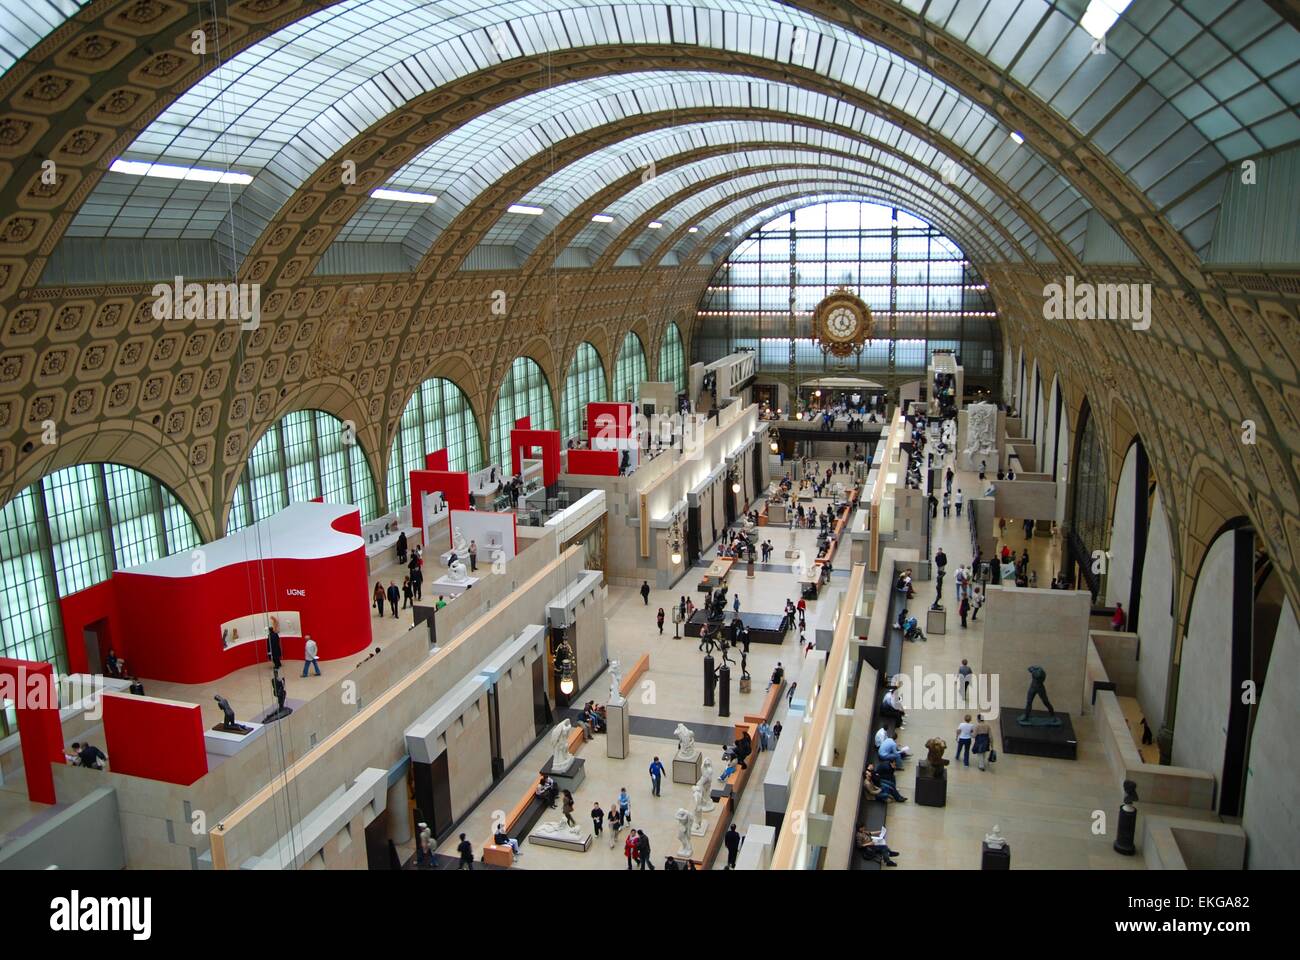 Musee D'Orsay Kunstgalerie, ein umgebauter Bahnhof, Paris, Frankreich zeigt Ausstellungen und das gewölbte Dach Stockfoto